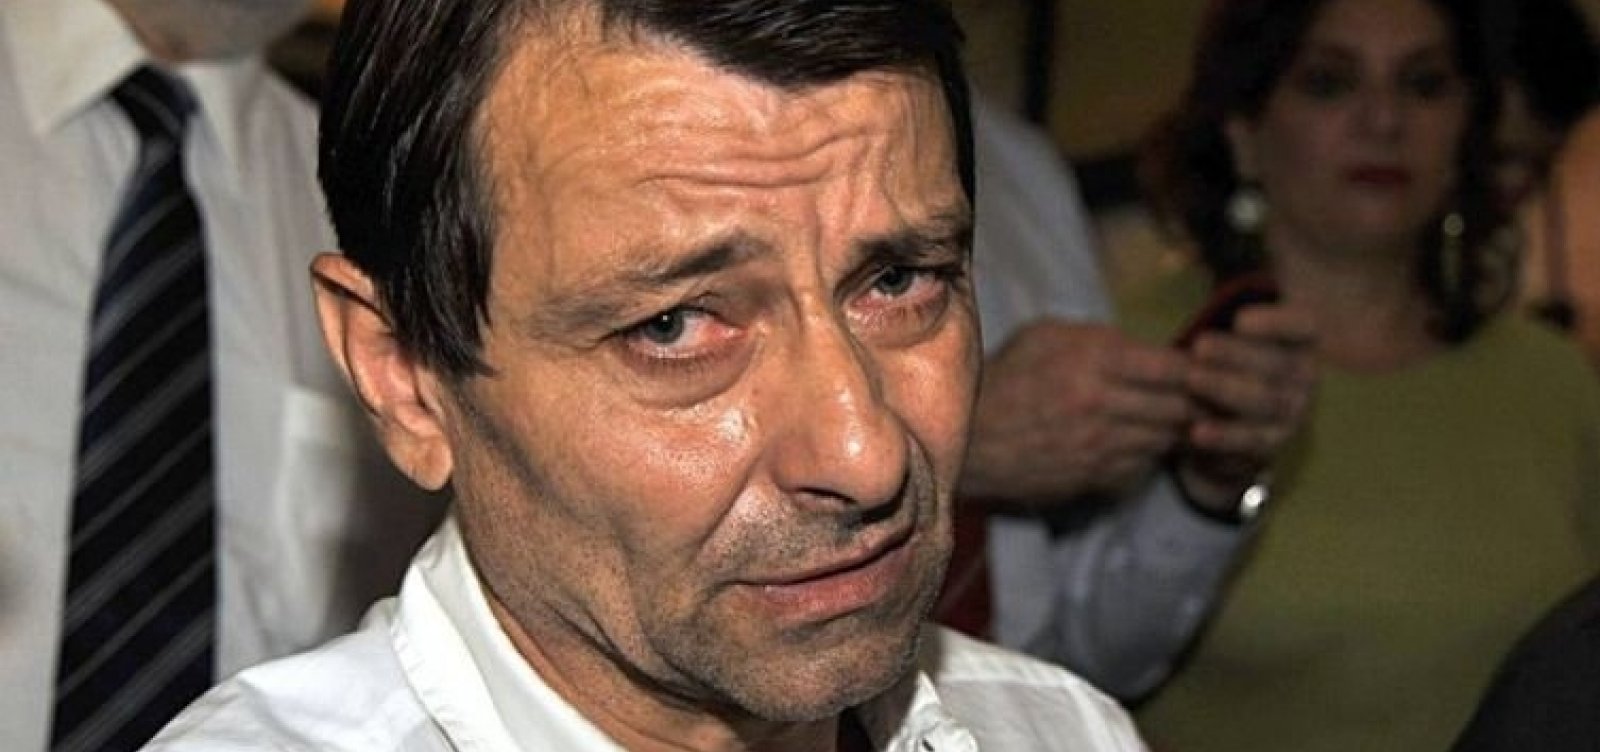 Governo italiano agradece Temer por assinar extradição de Battisti